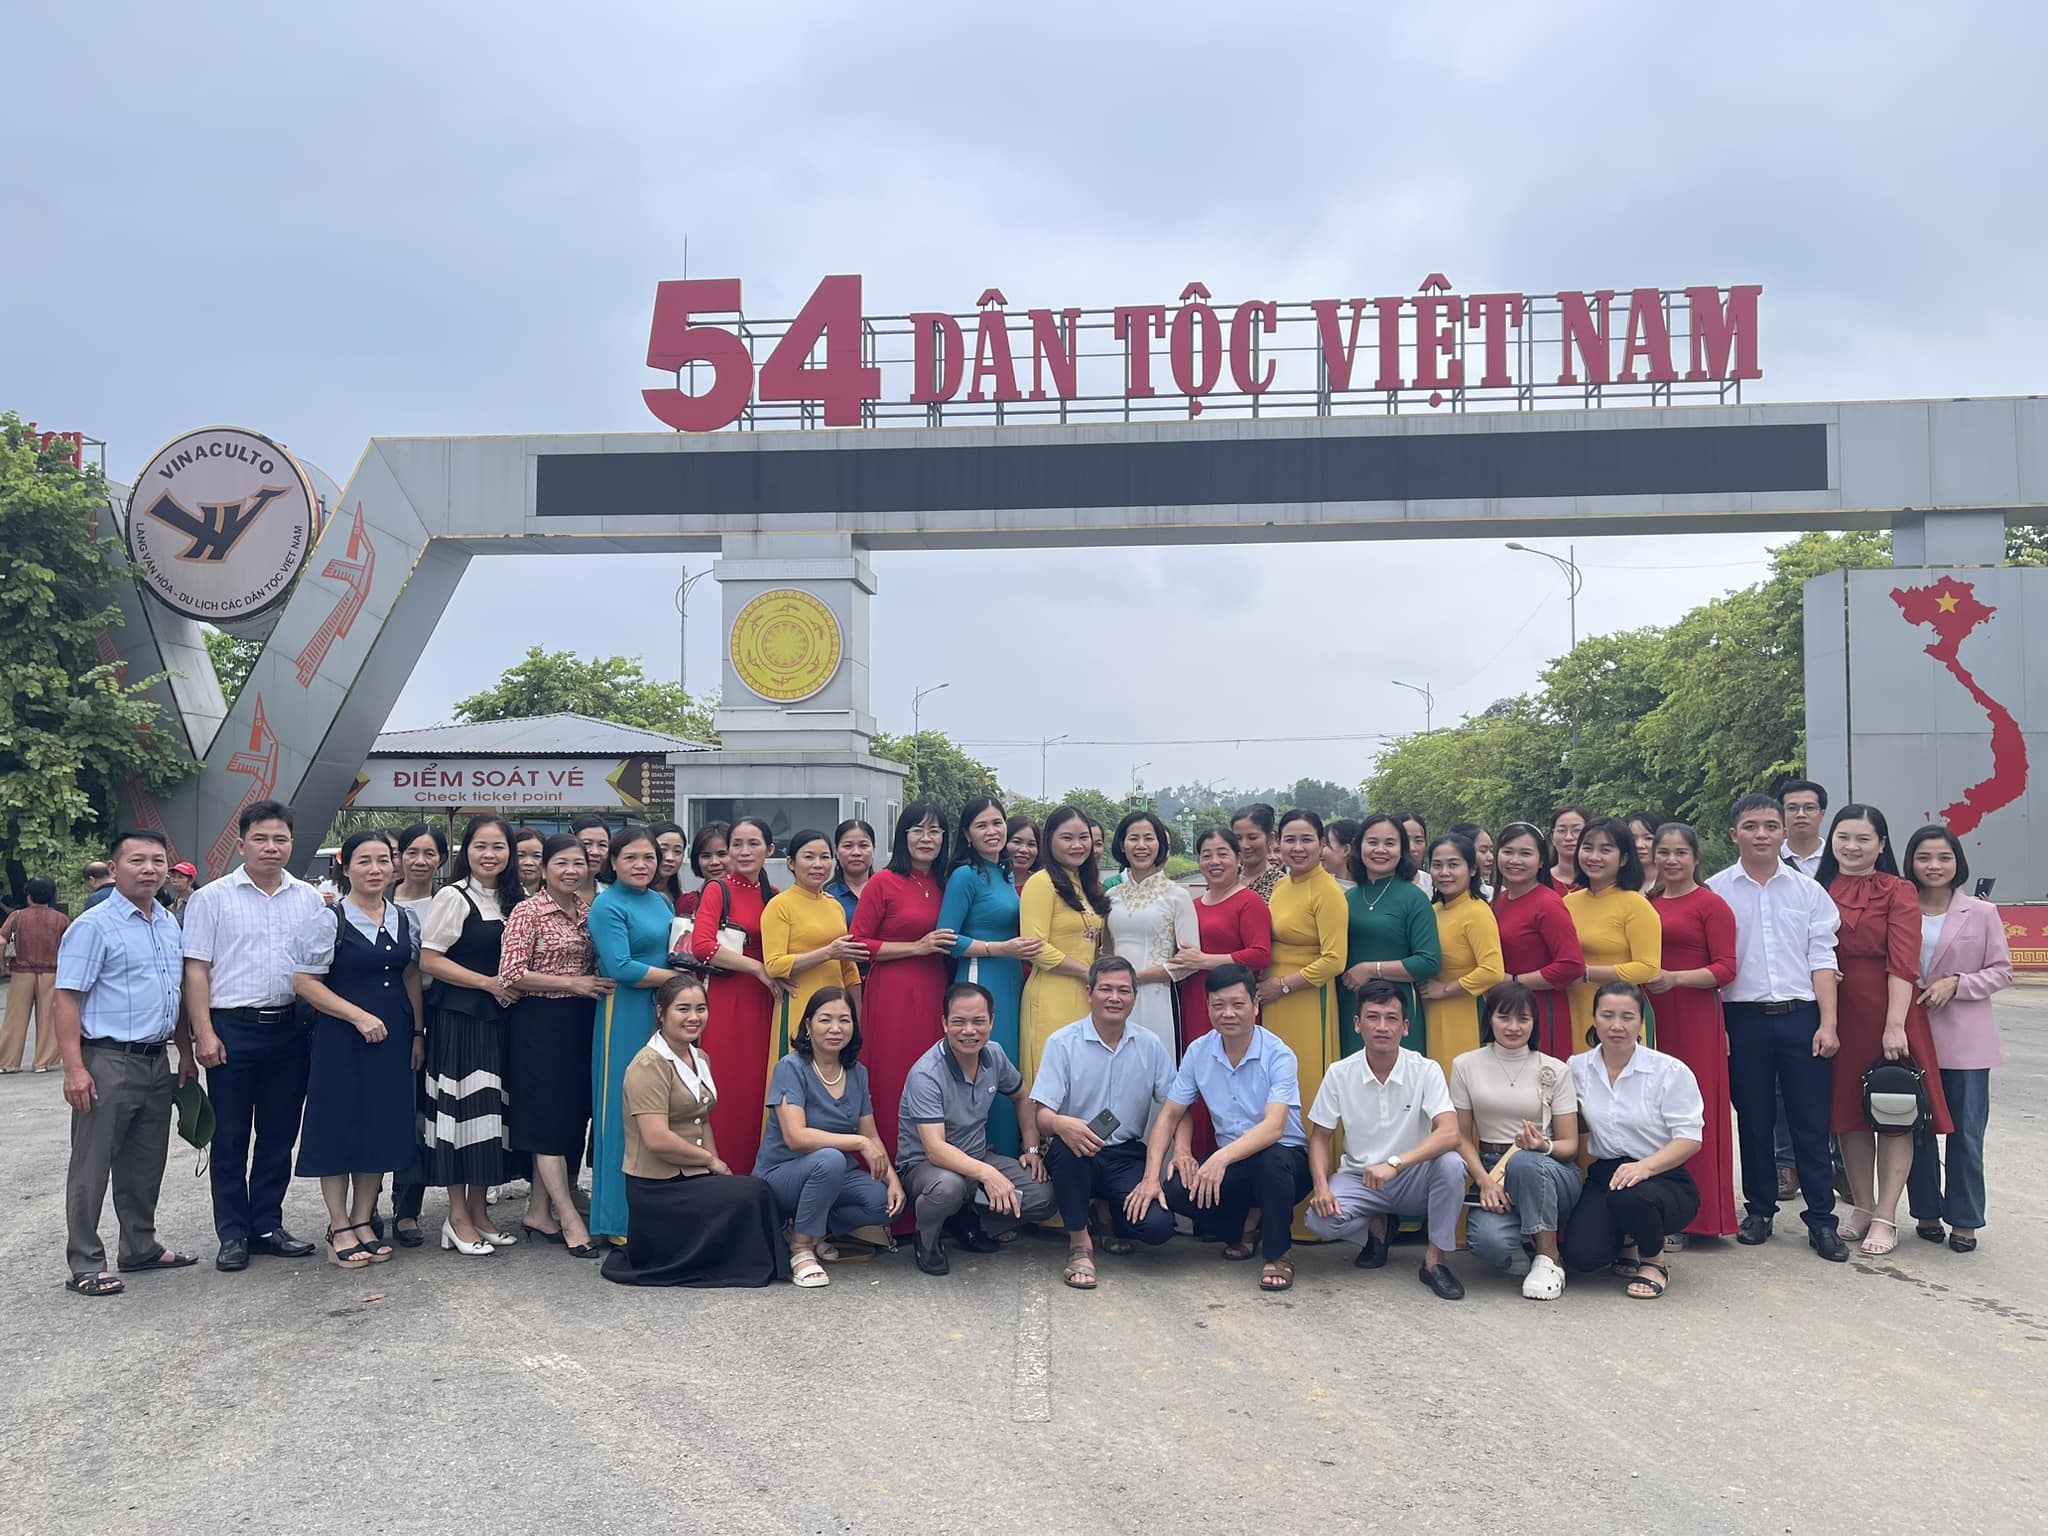 Cổng Soát Vé Làng Văn Hóa Các Dân Tộc Việt Nam